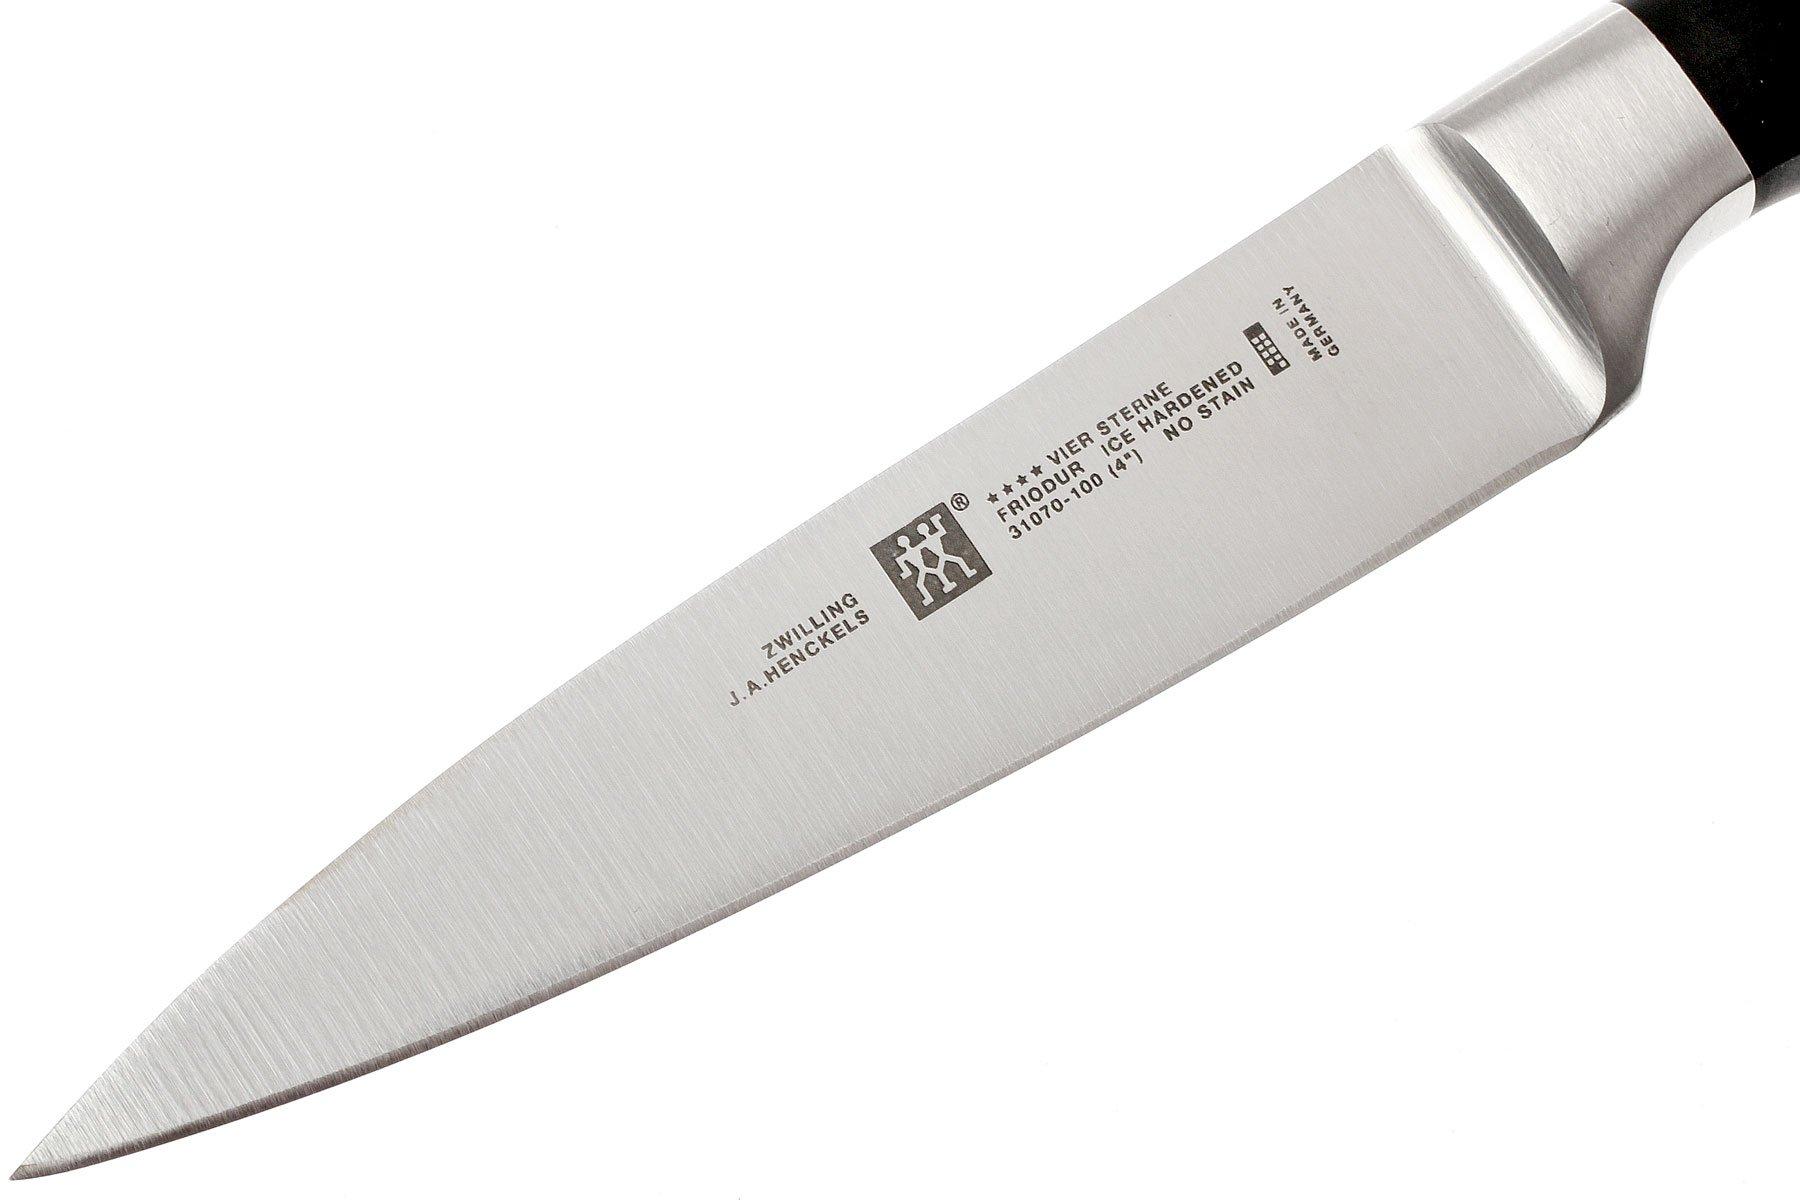 Heerlijk Wederzijds Ventileren Knivesandtools.be: Keukenmessen, messen, zaklampen & verrekijkers